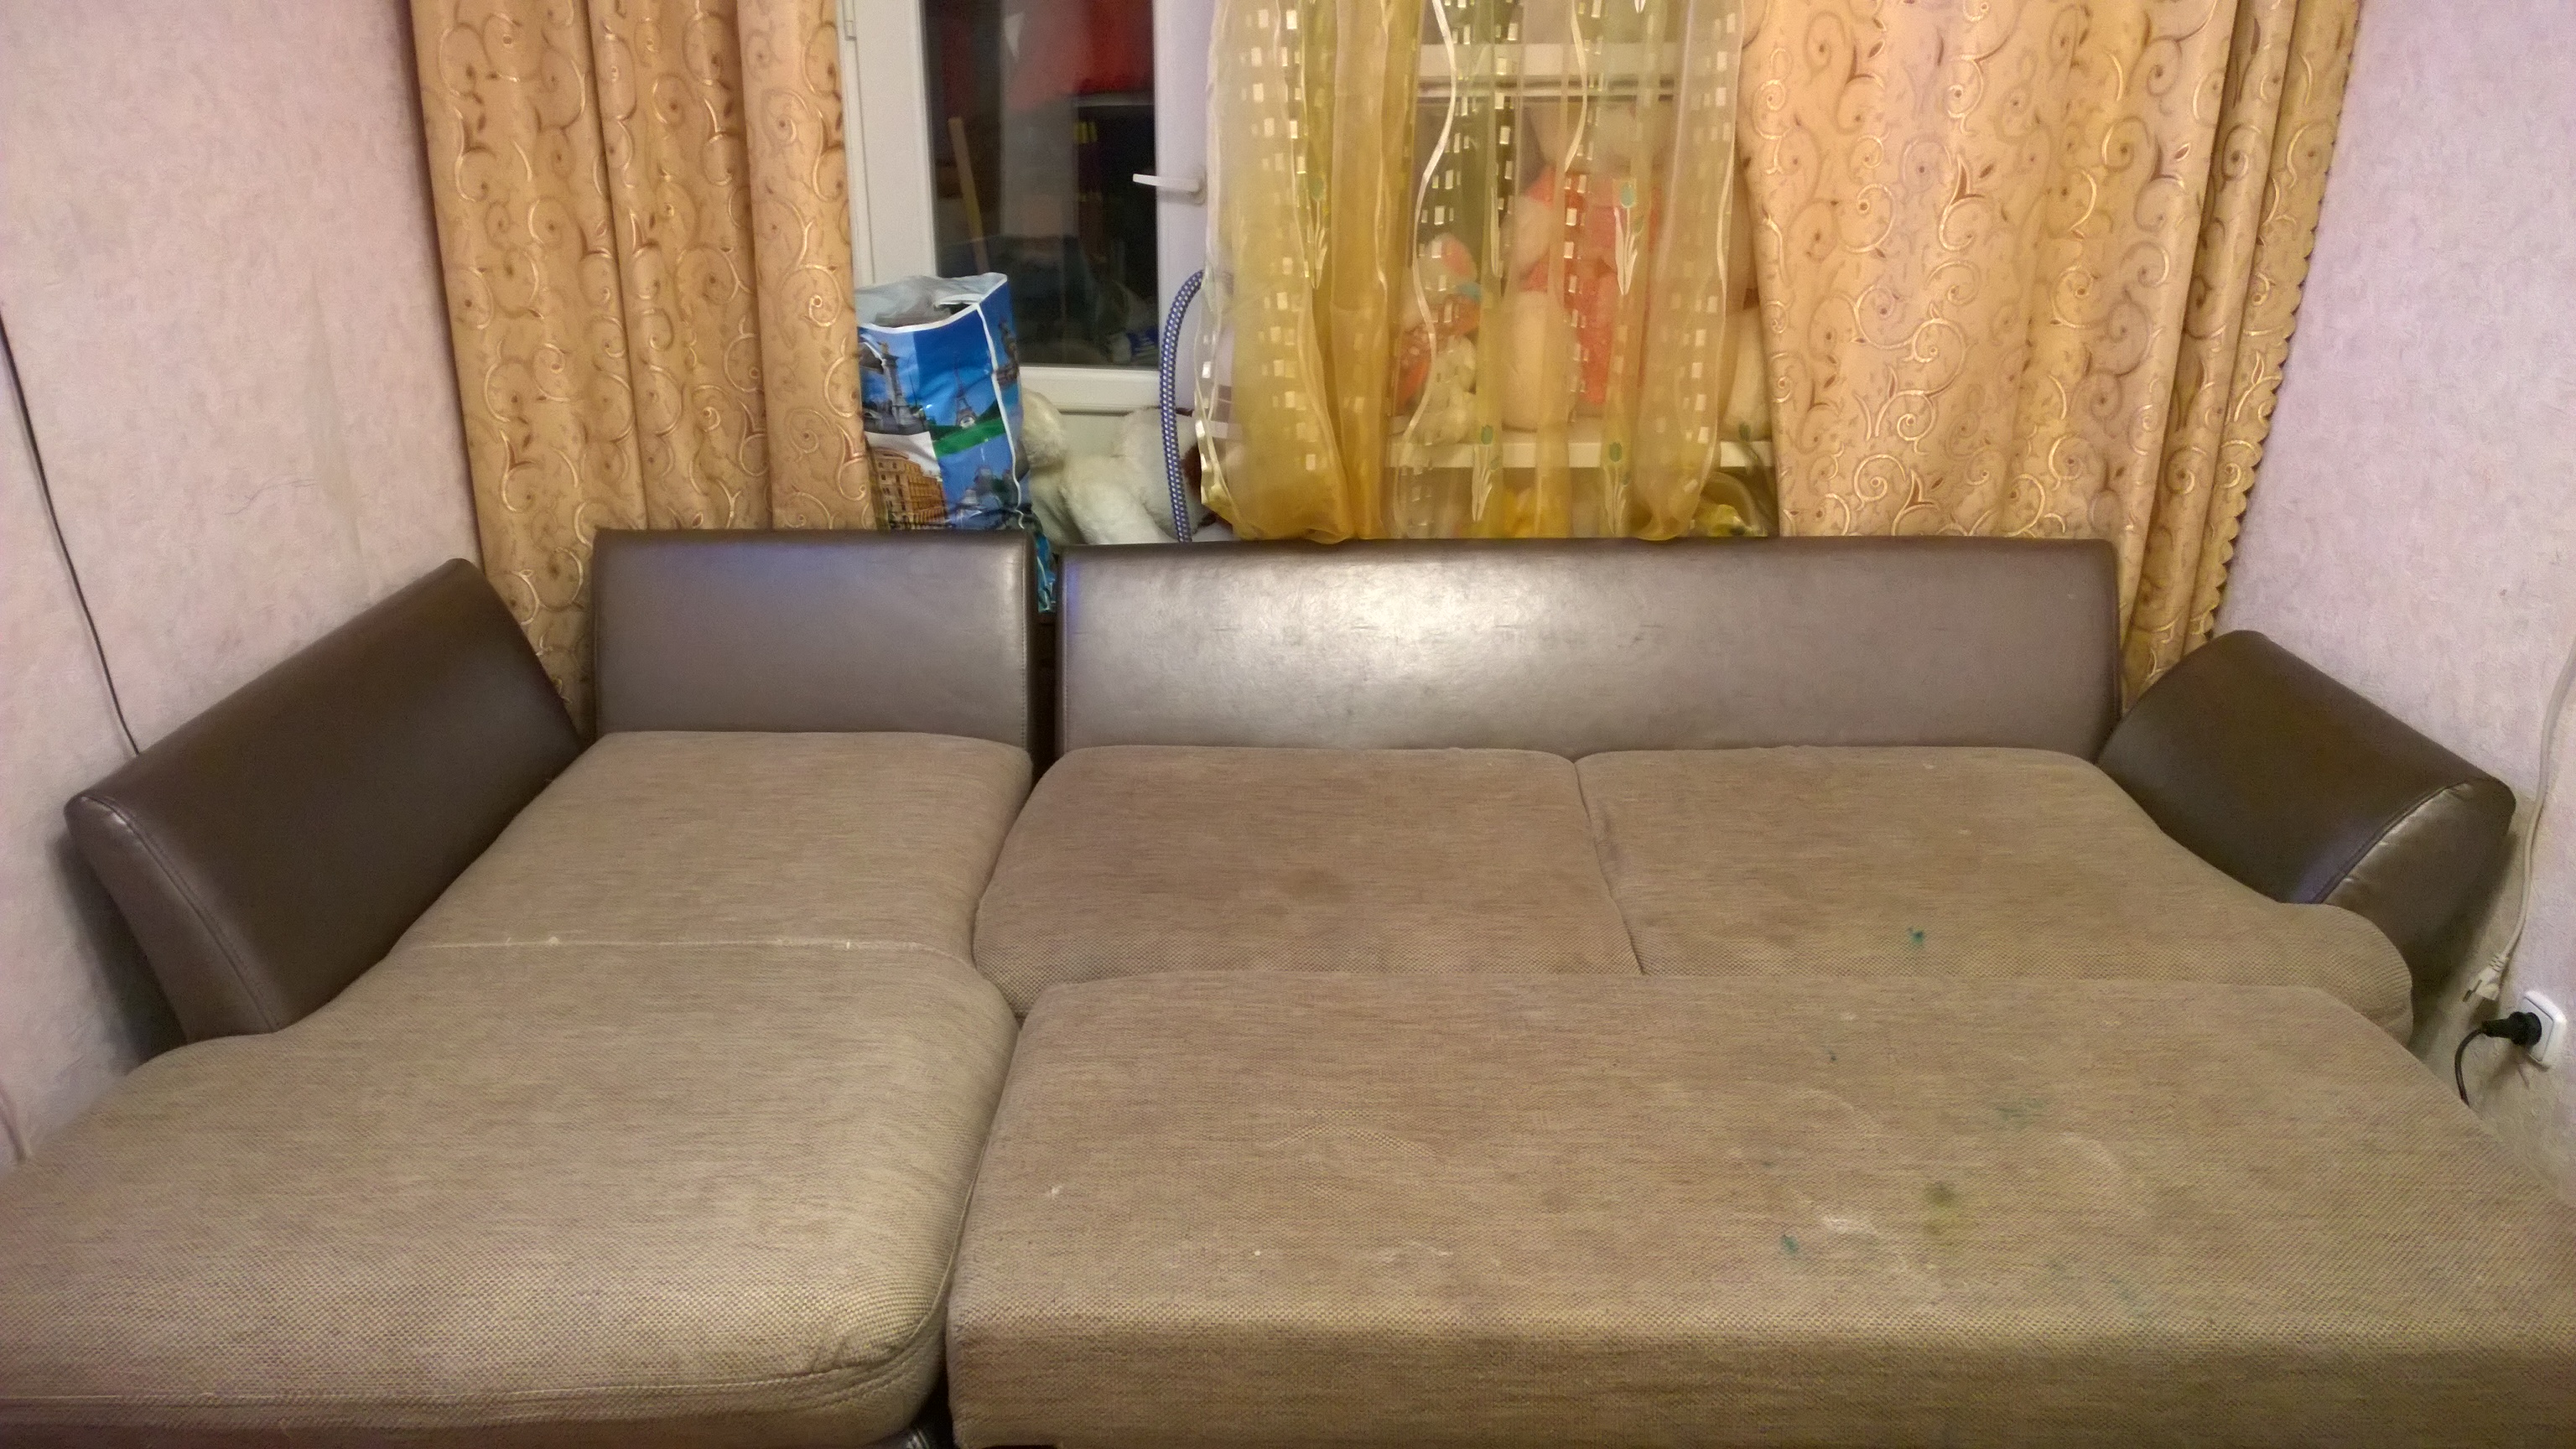 Фото Спустя час фрагмент дивана очищен и видна разница.